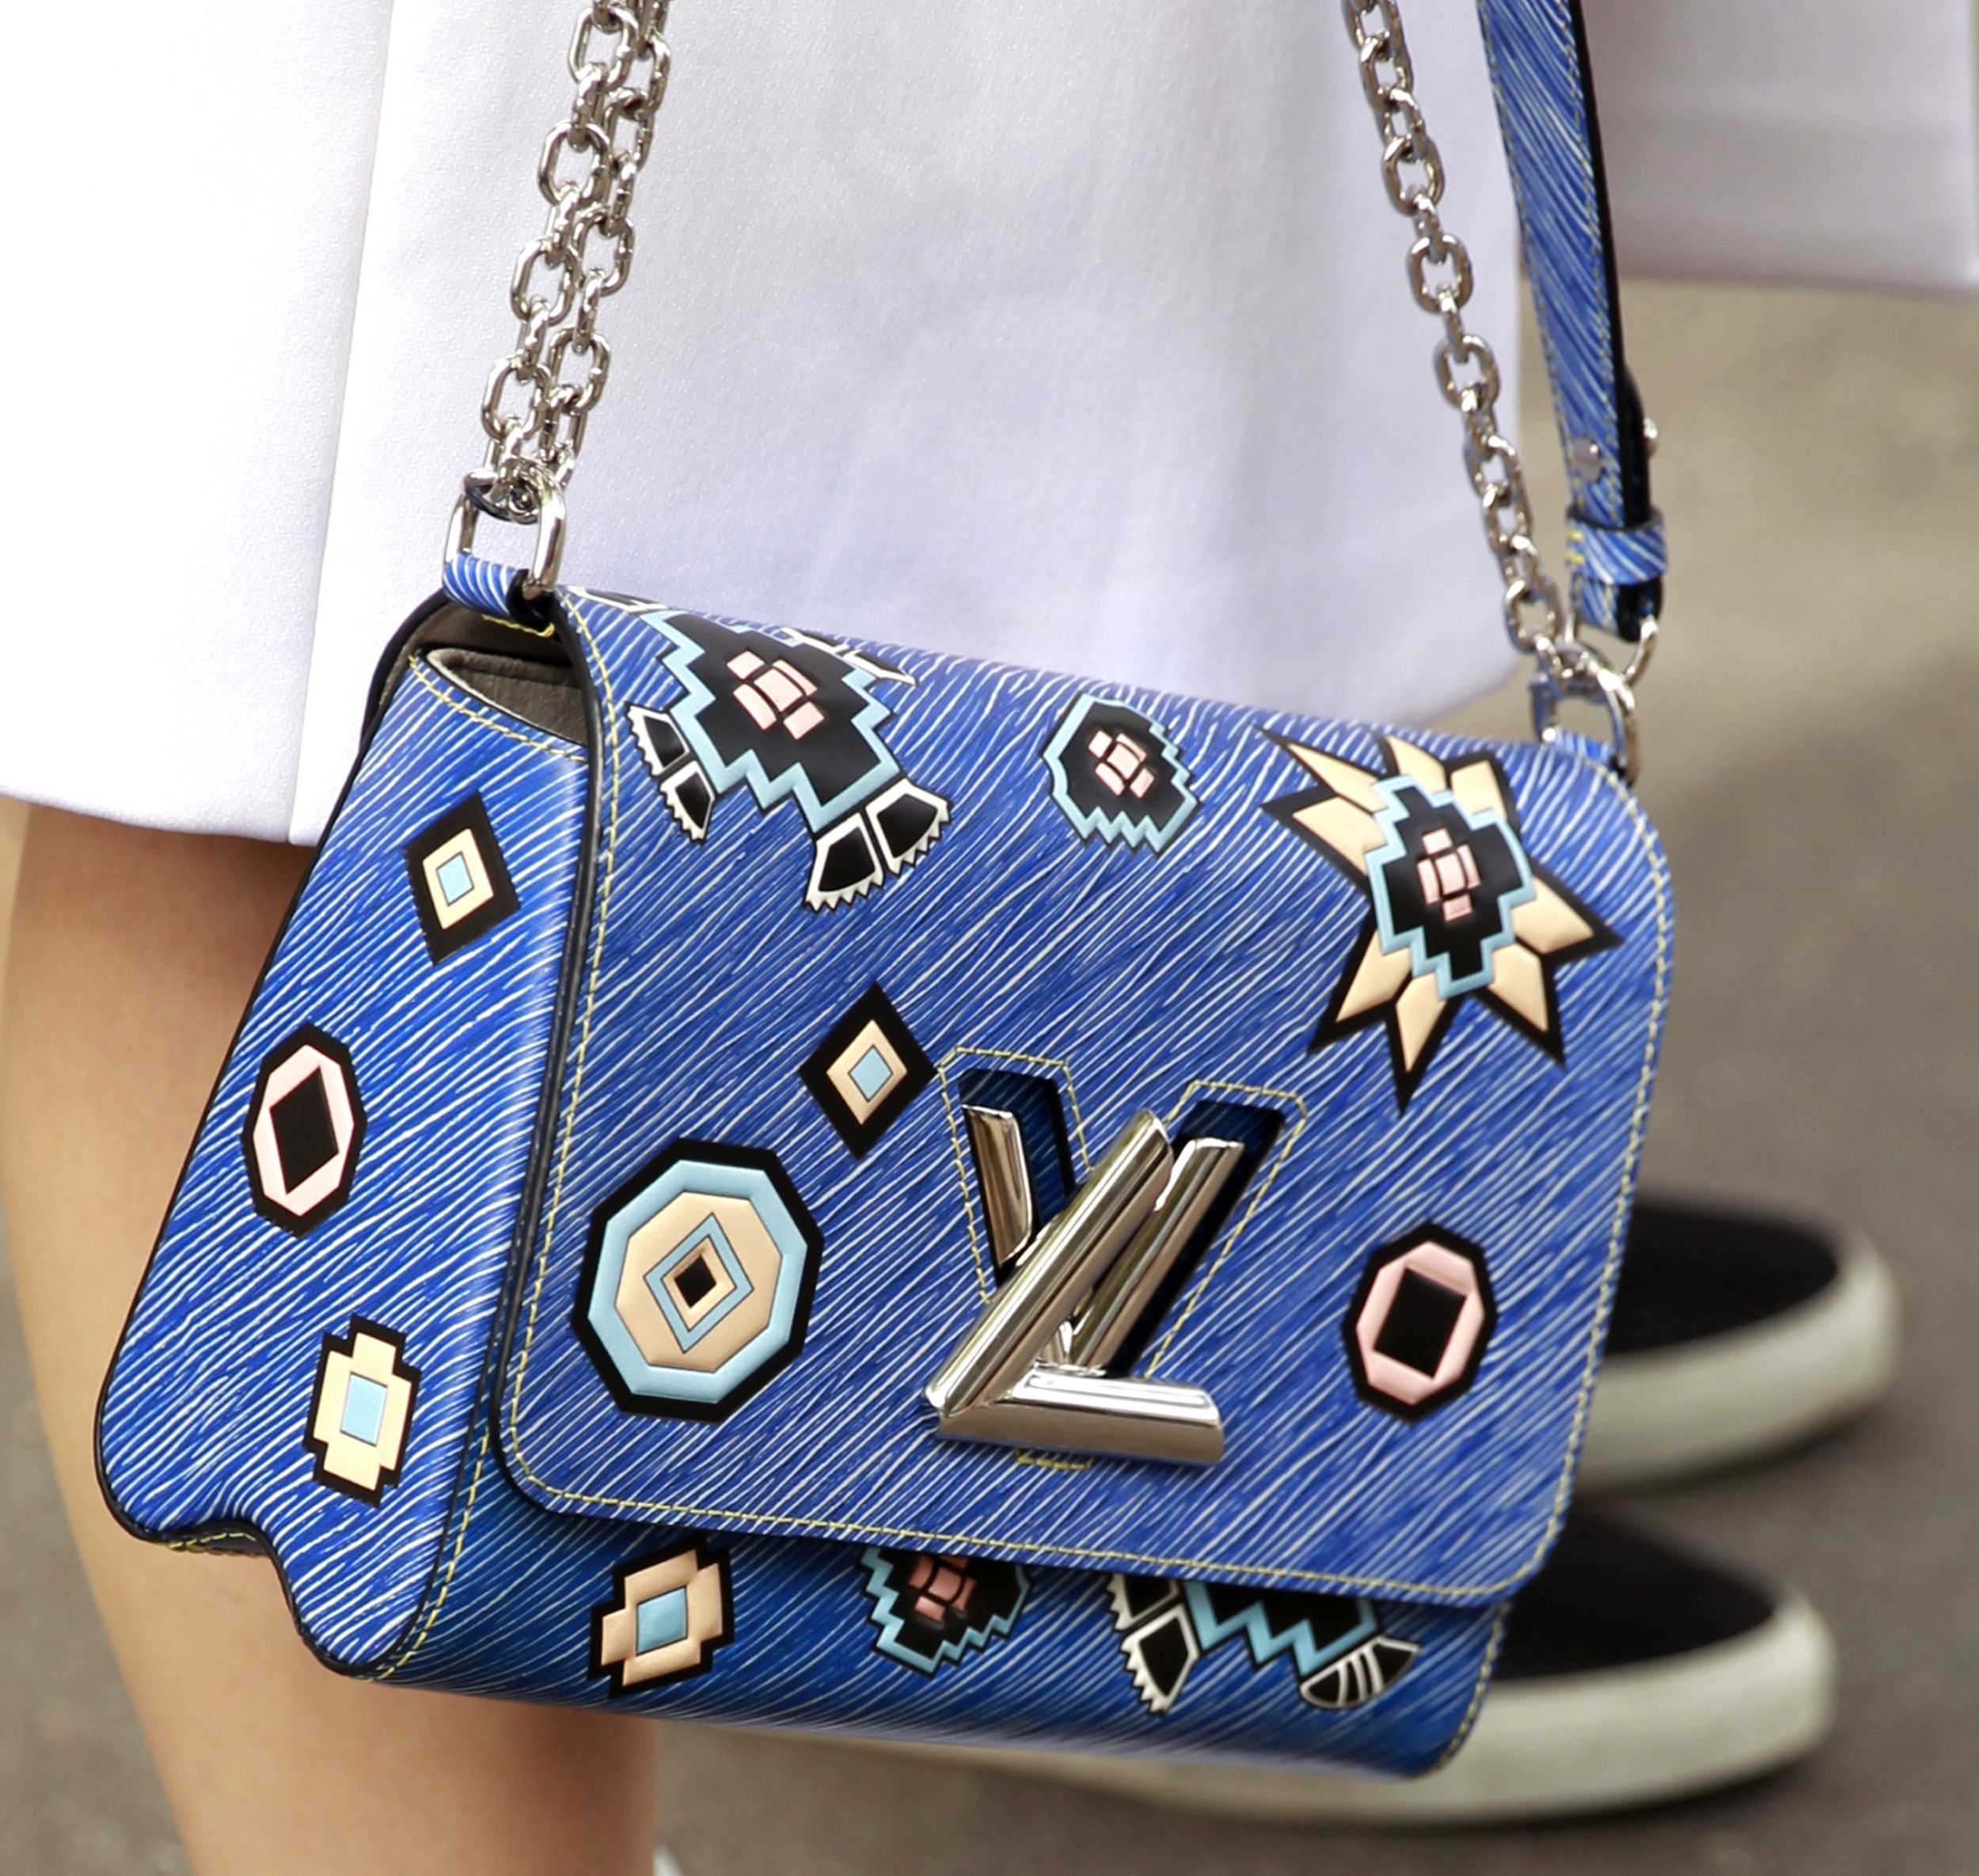 Farbige Luxus-Handtaschen von Gucci, Louis Vuitton und Valentino